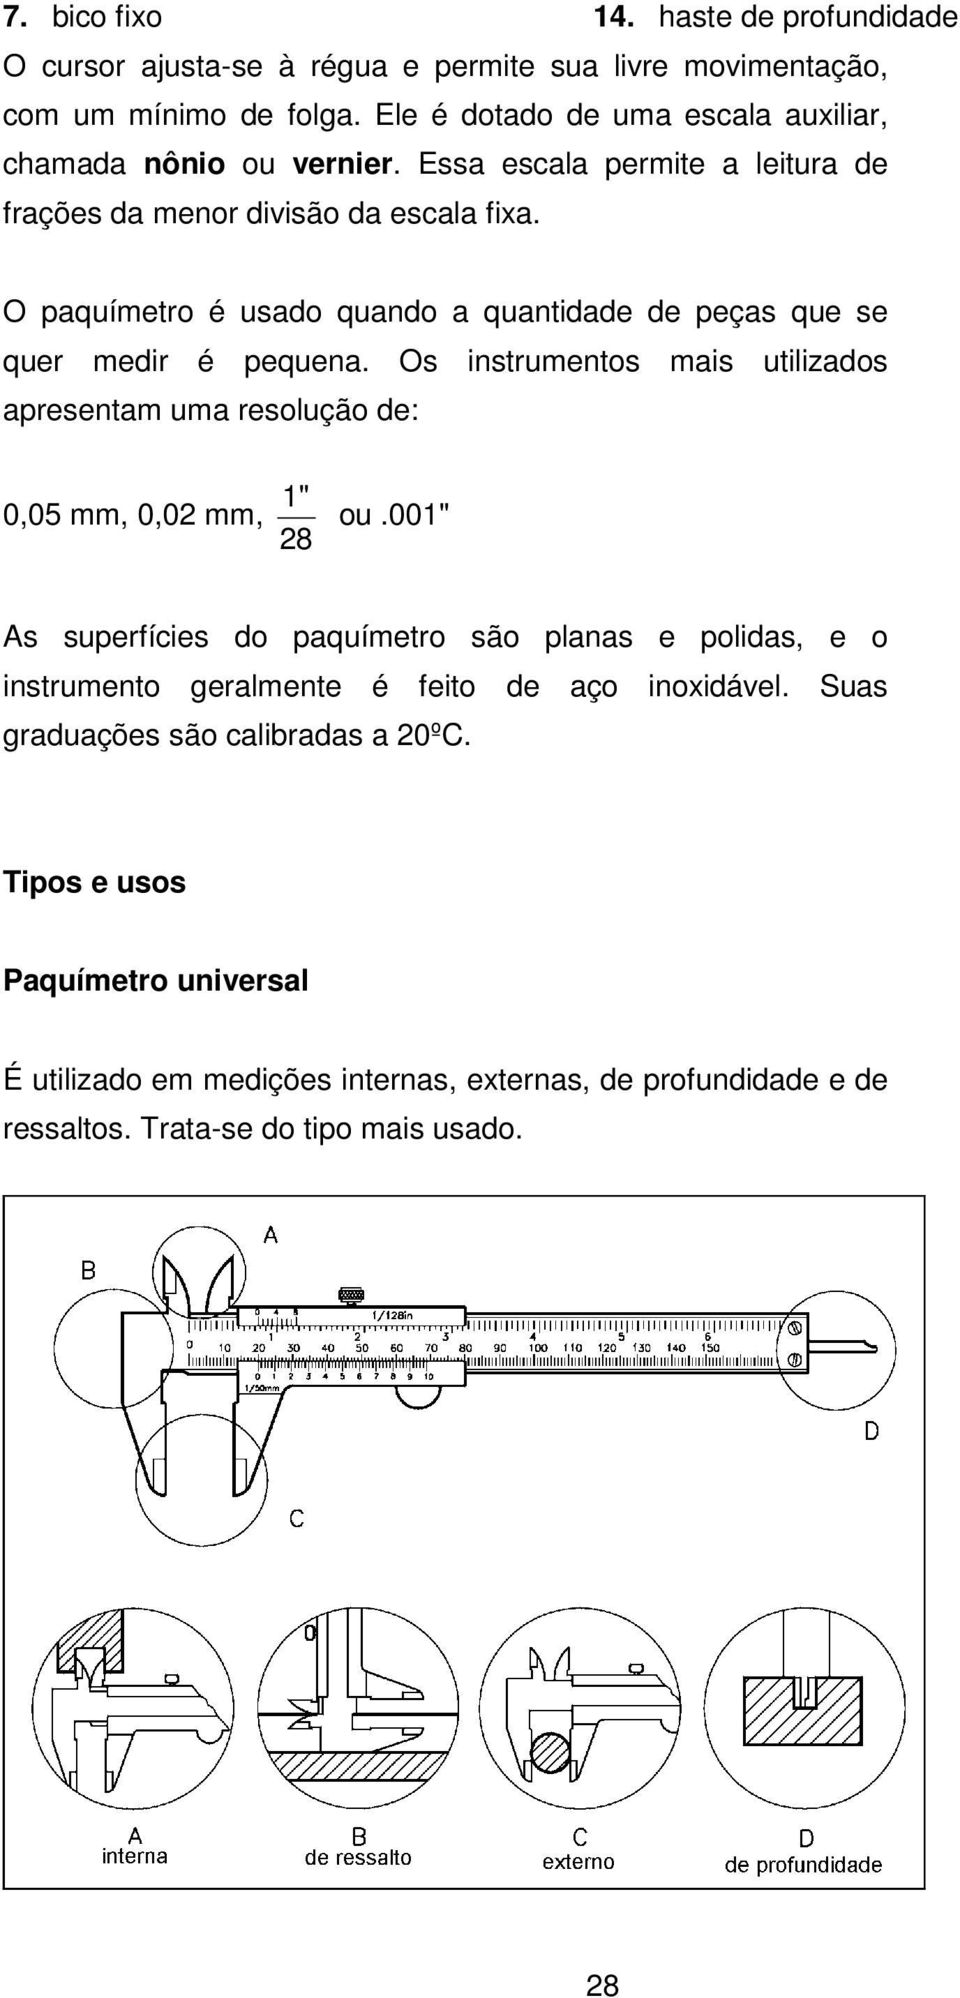 O paquímetro é usado quando a quantidade de peças que se quer medir é pequena. Os instrumentos mais utilizados apresentam uma resolução de: 0,05 mm, 0,02 mm, 1" 28 ou.